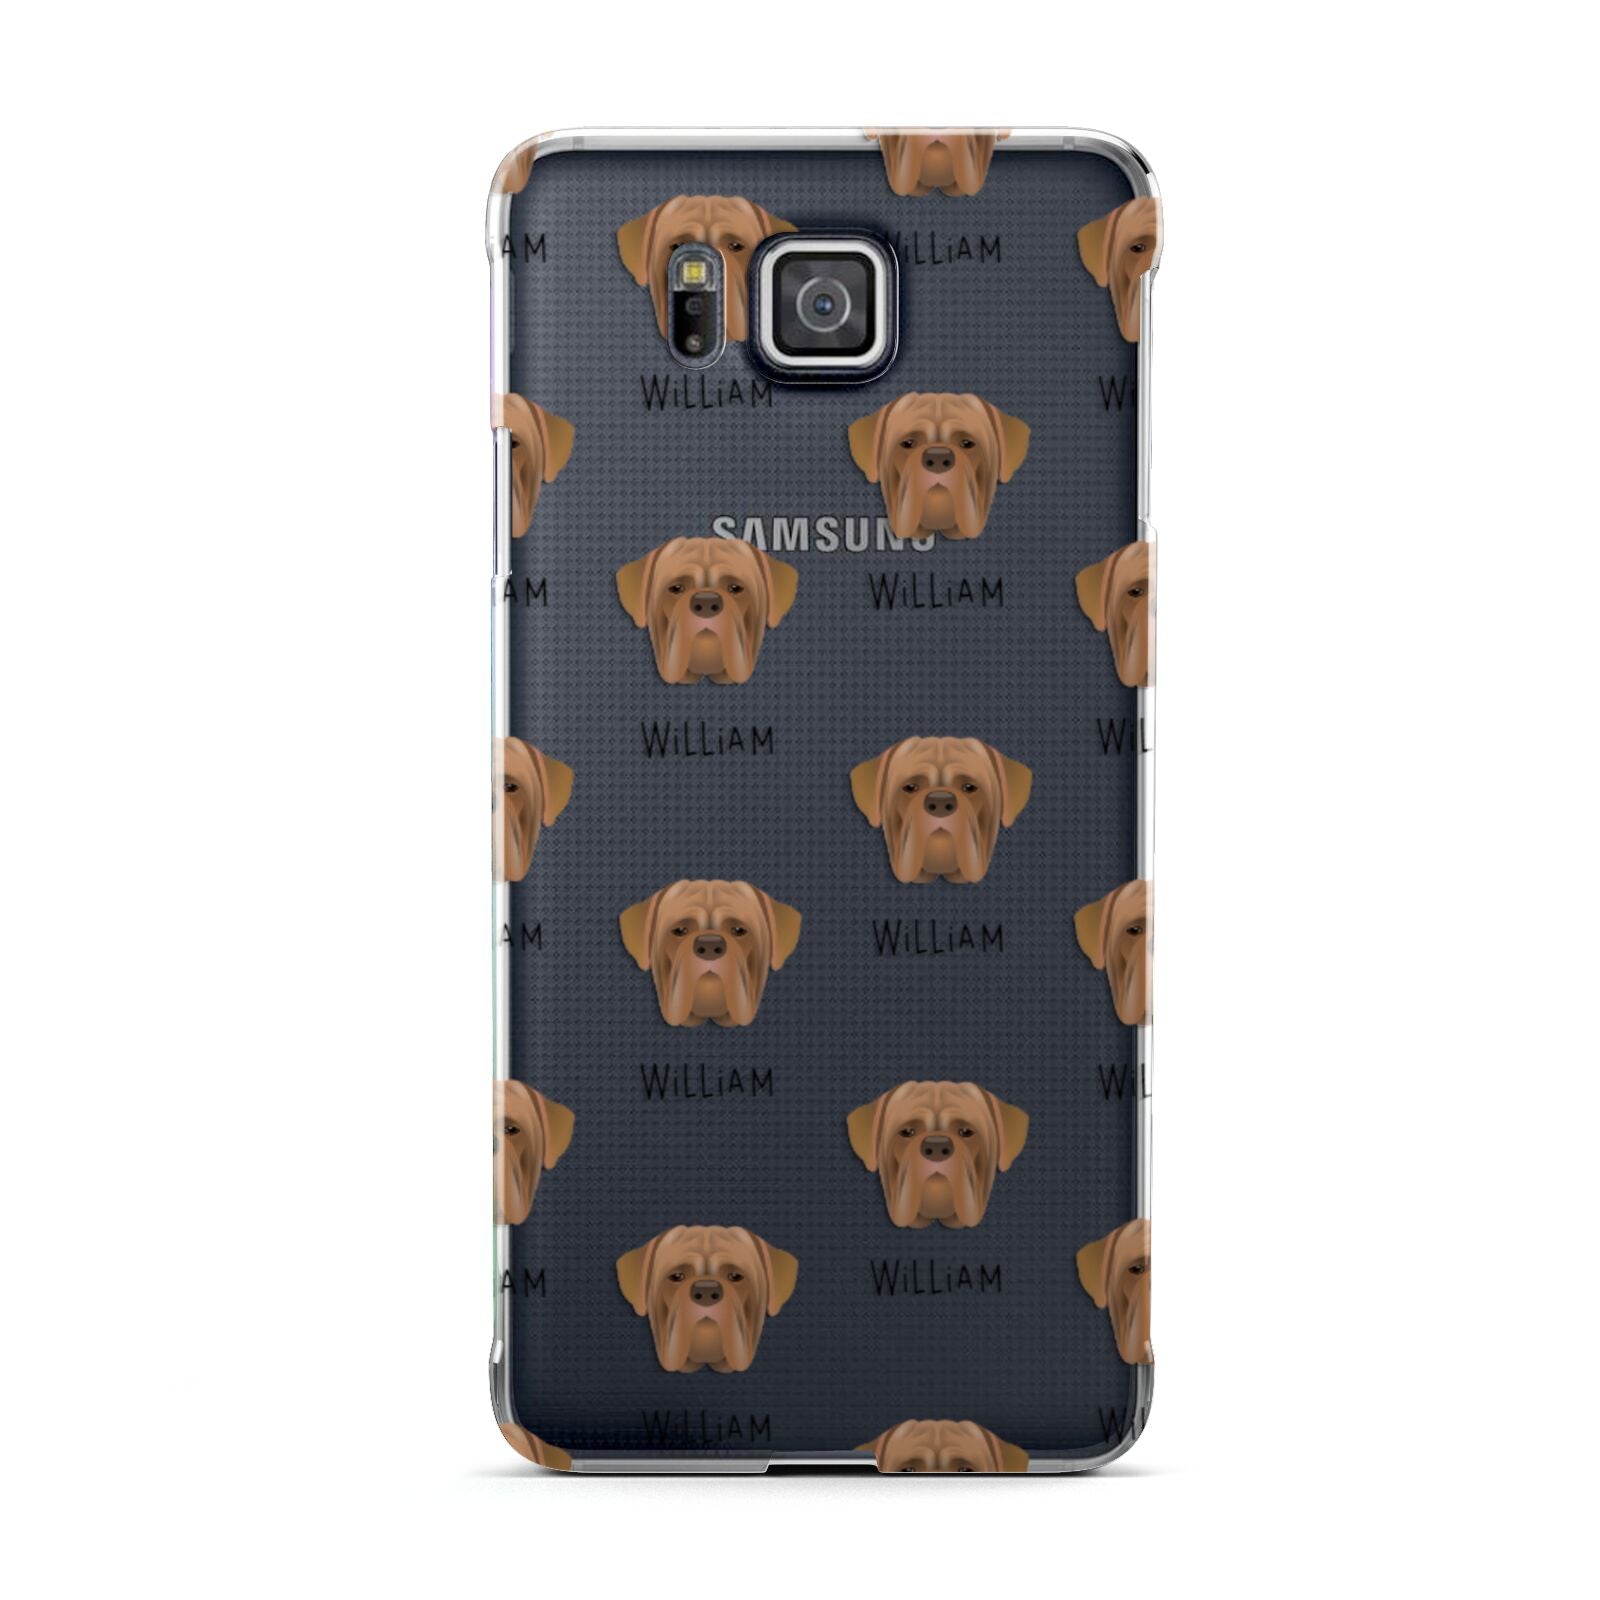 Dogue de Bordeaux Icon with Name Samsung Galaxy Alpha Case